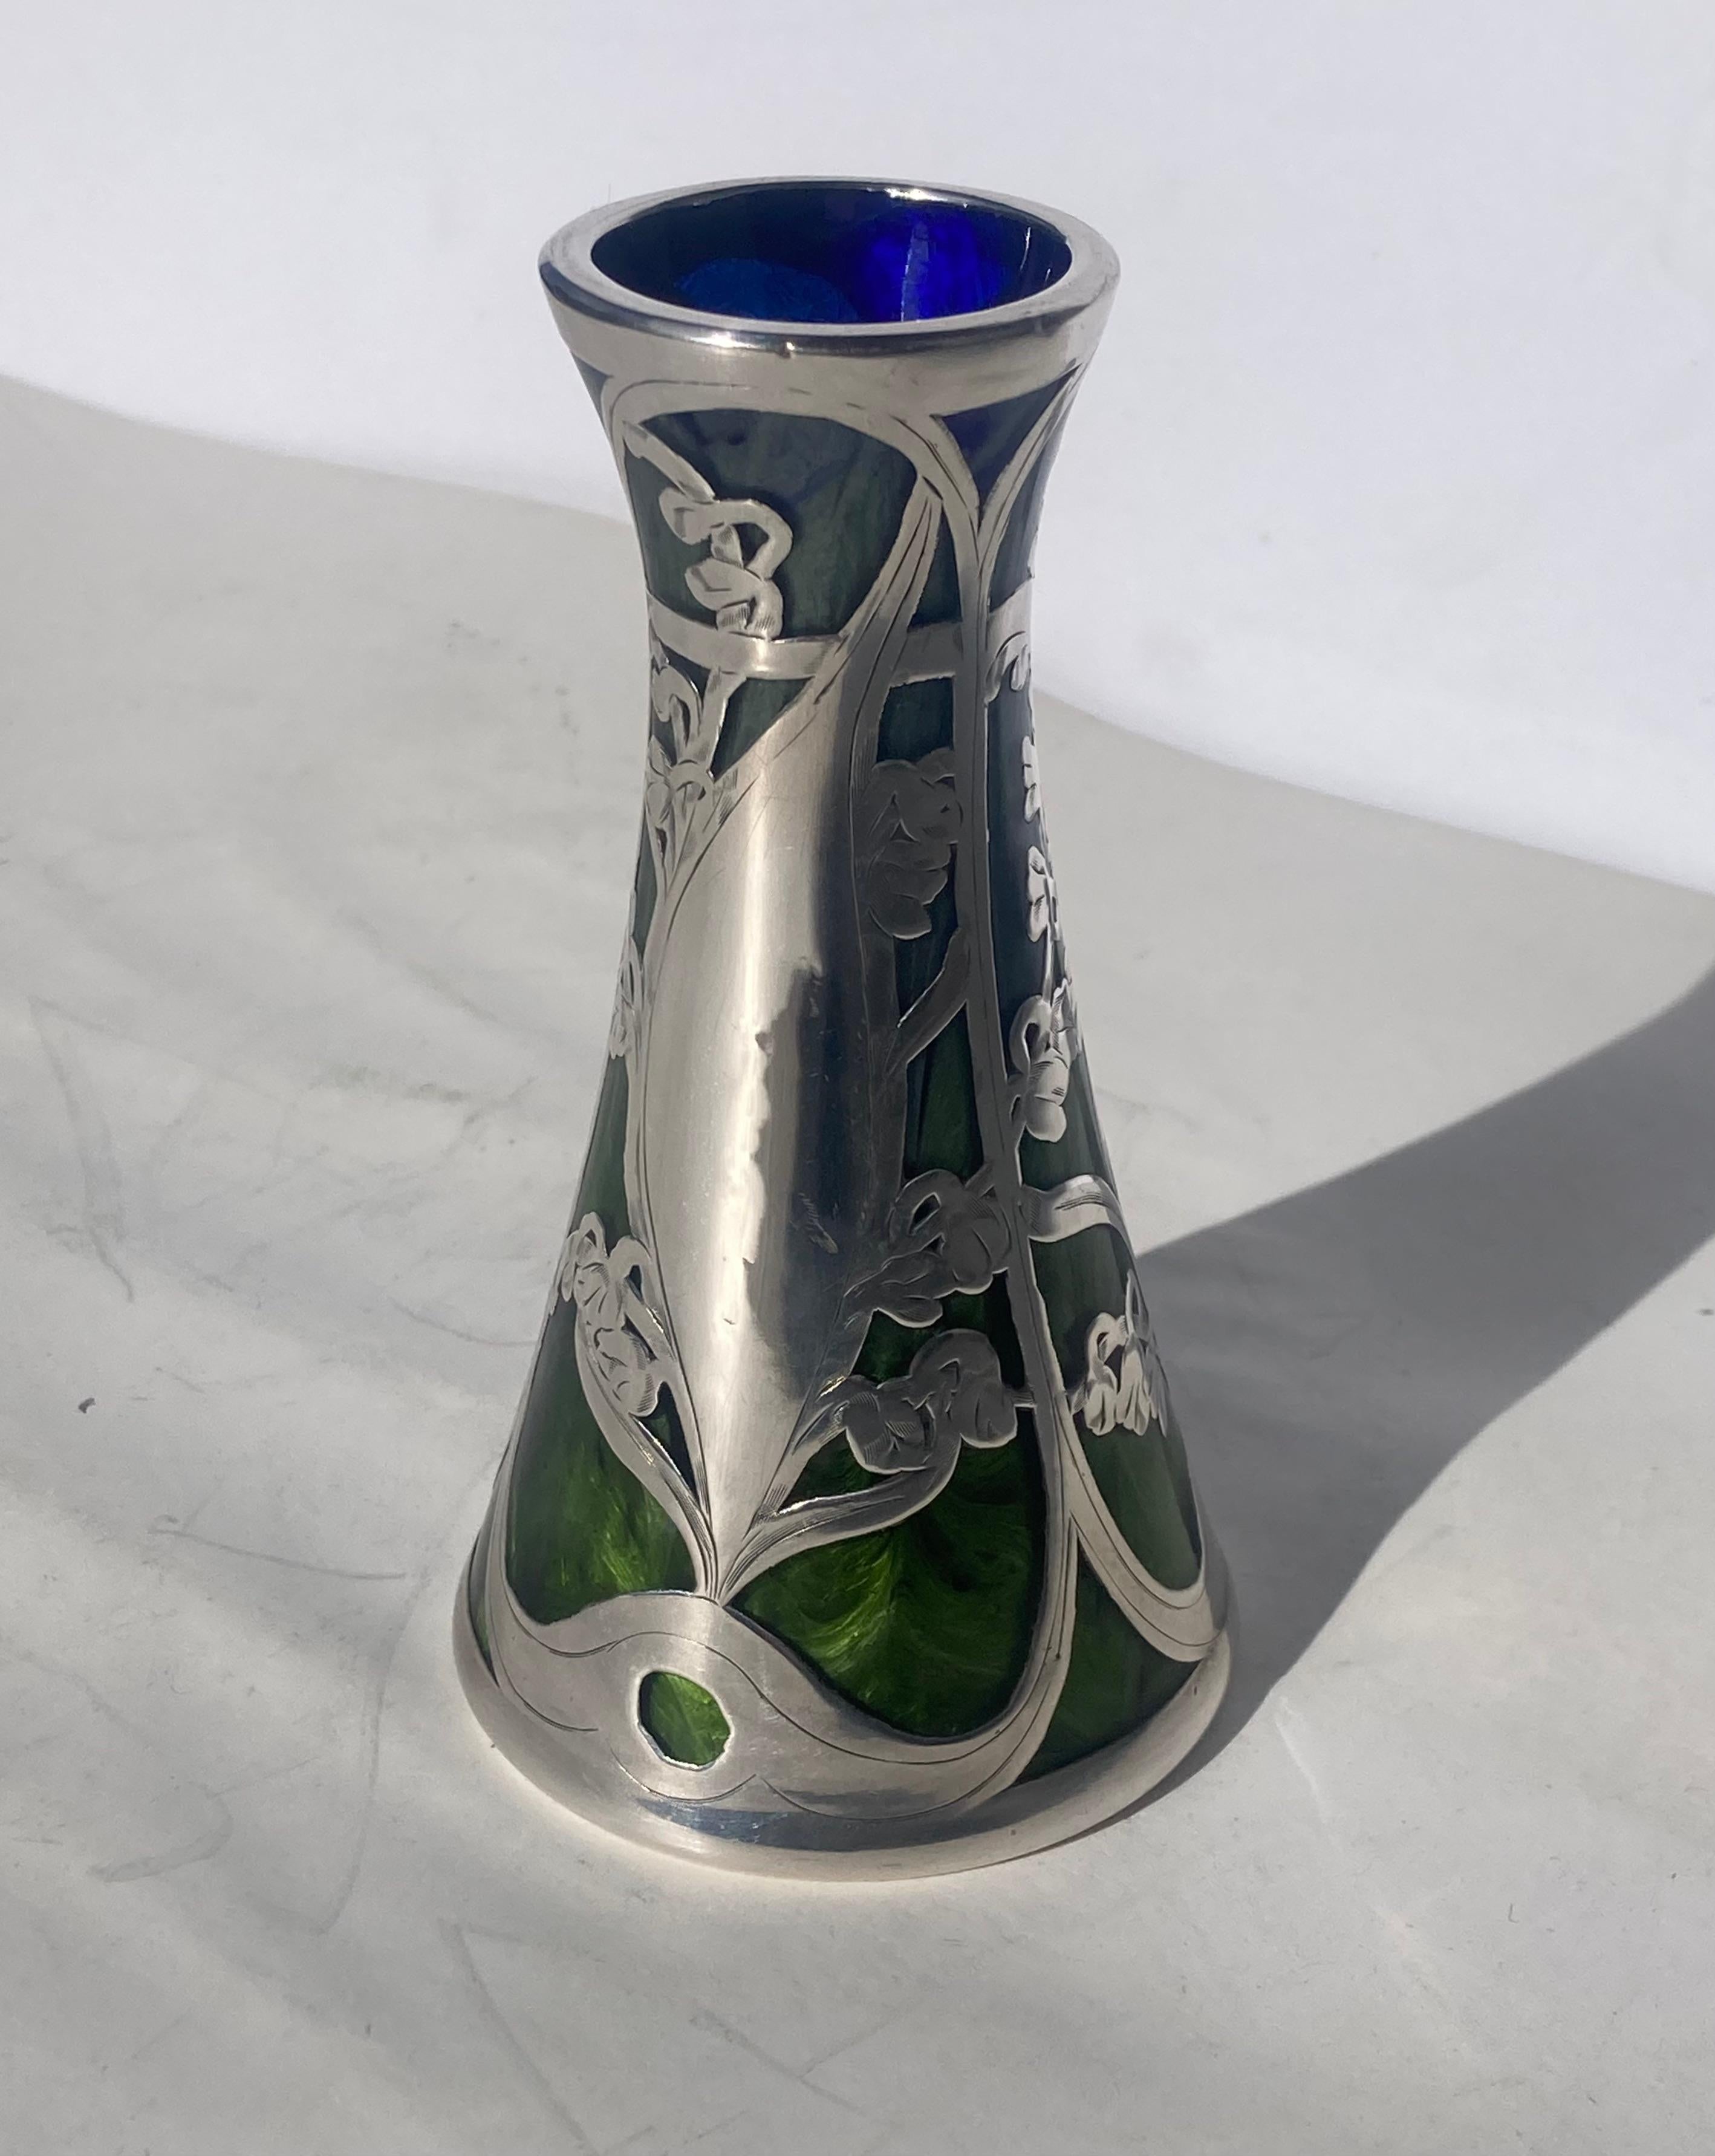 Magnifique vase en verre Titania tourbillonnant et argenté. Il s'agit d'un vase ancien rare.